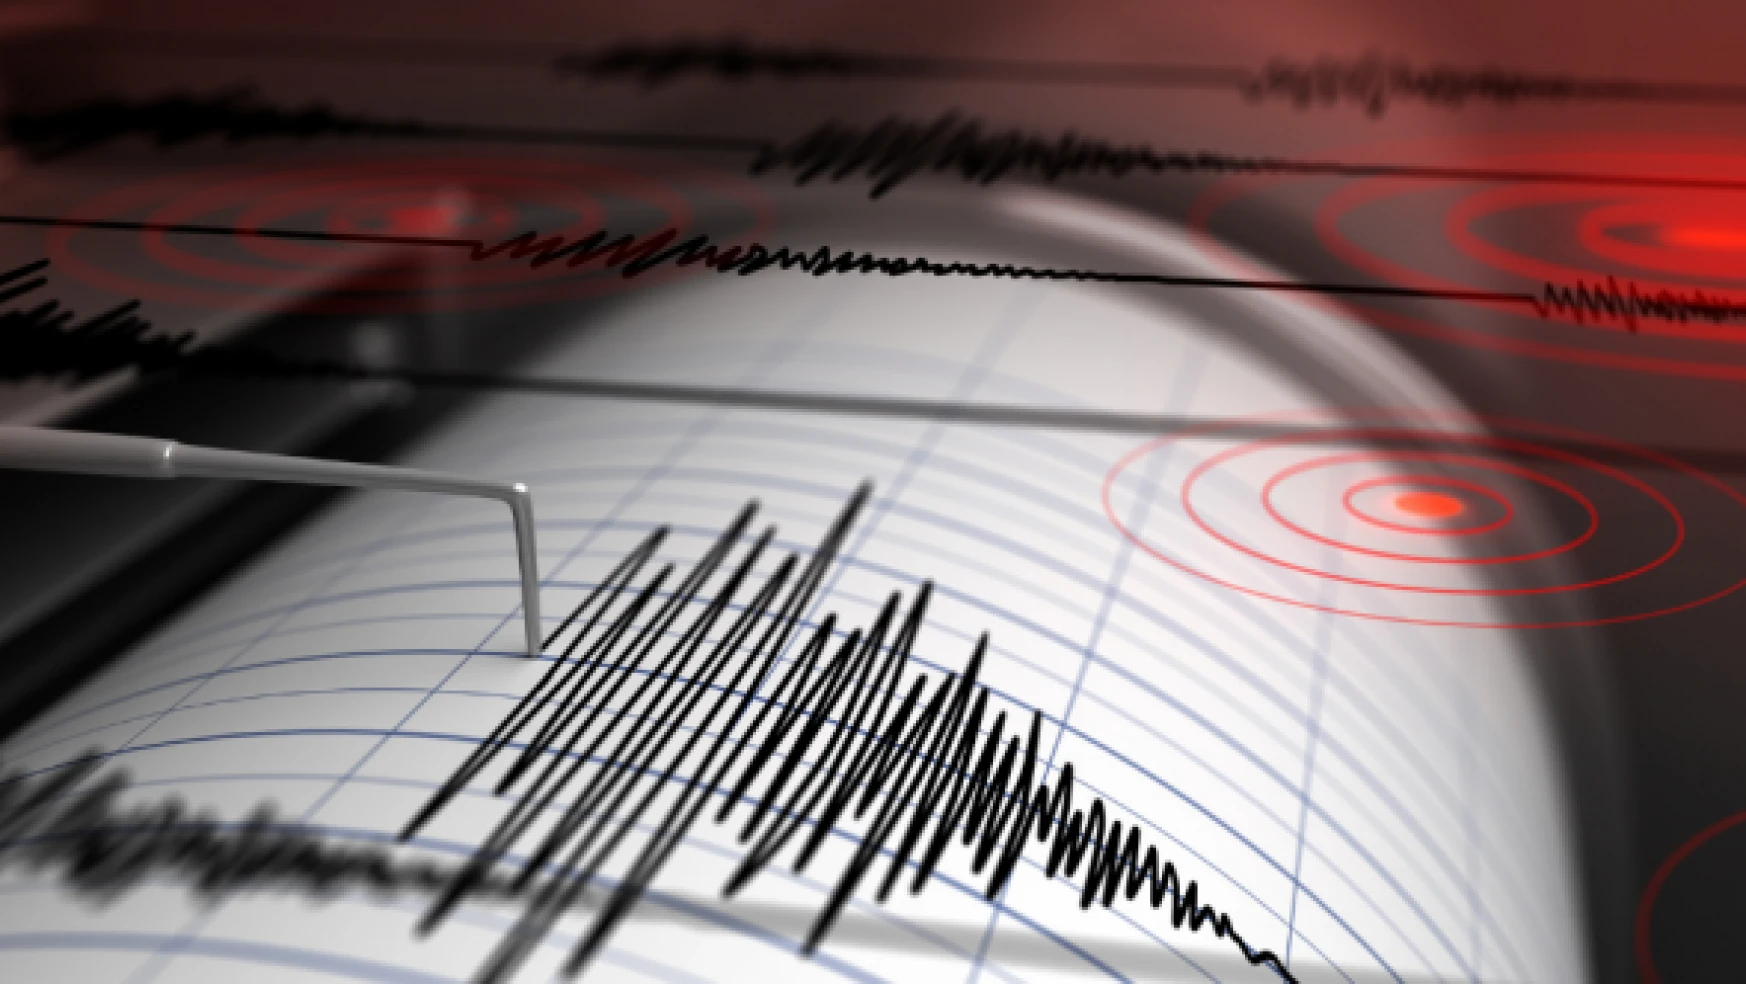 Ermenistan'da 5.3 büyüklüğünde deprem!